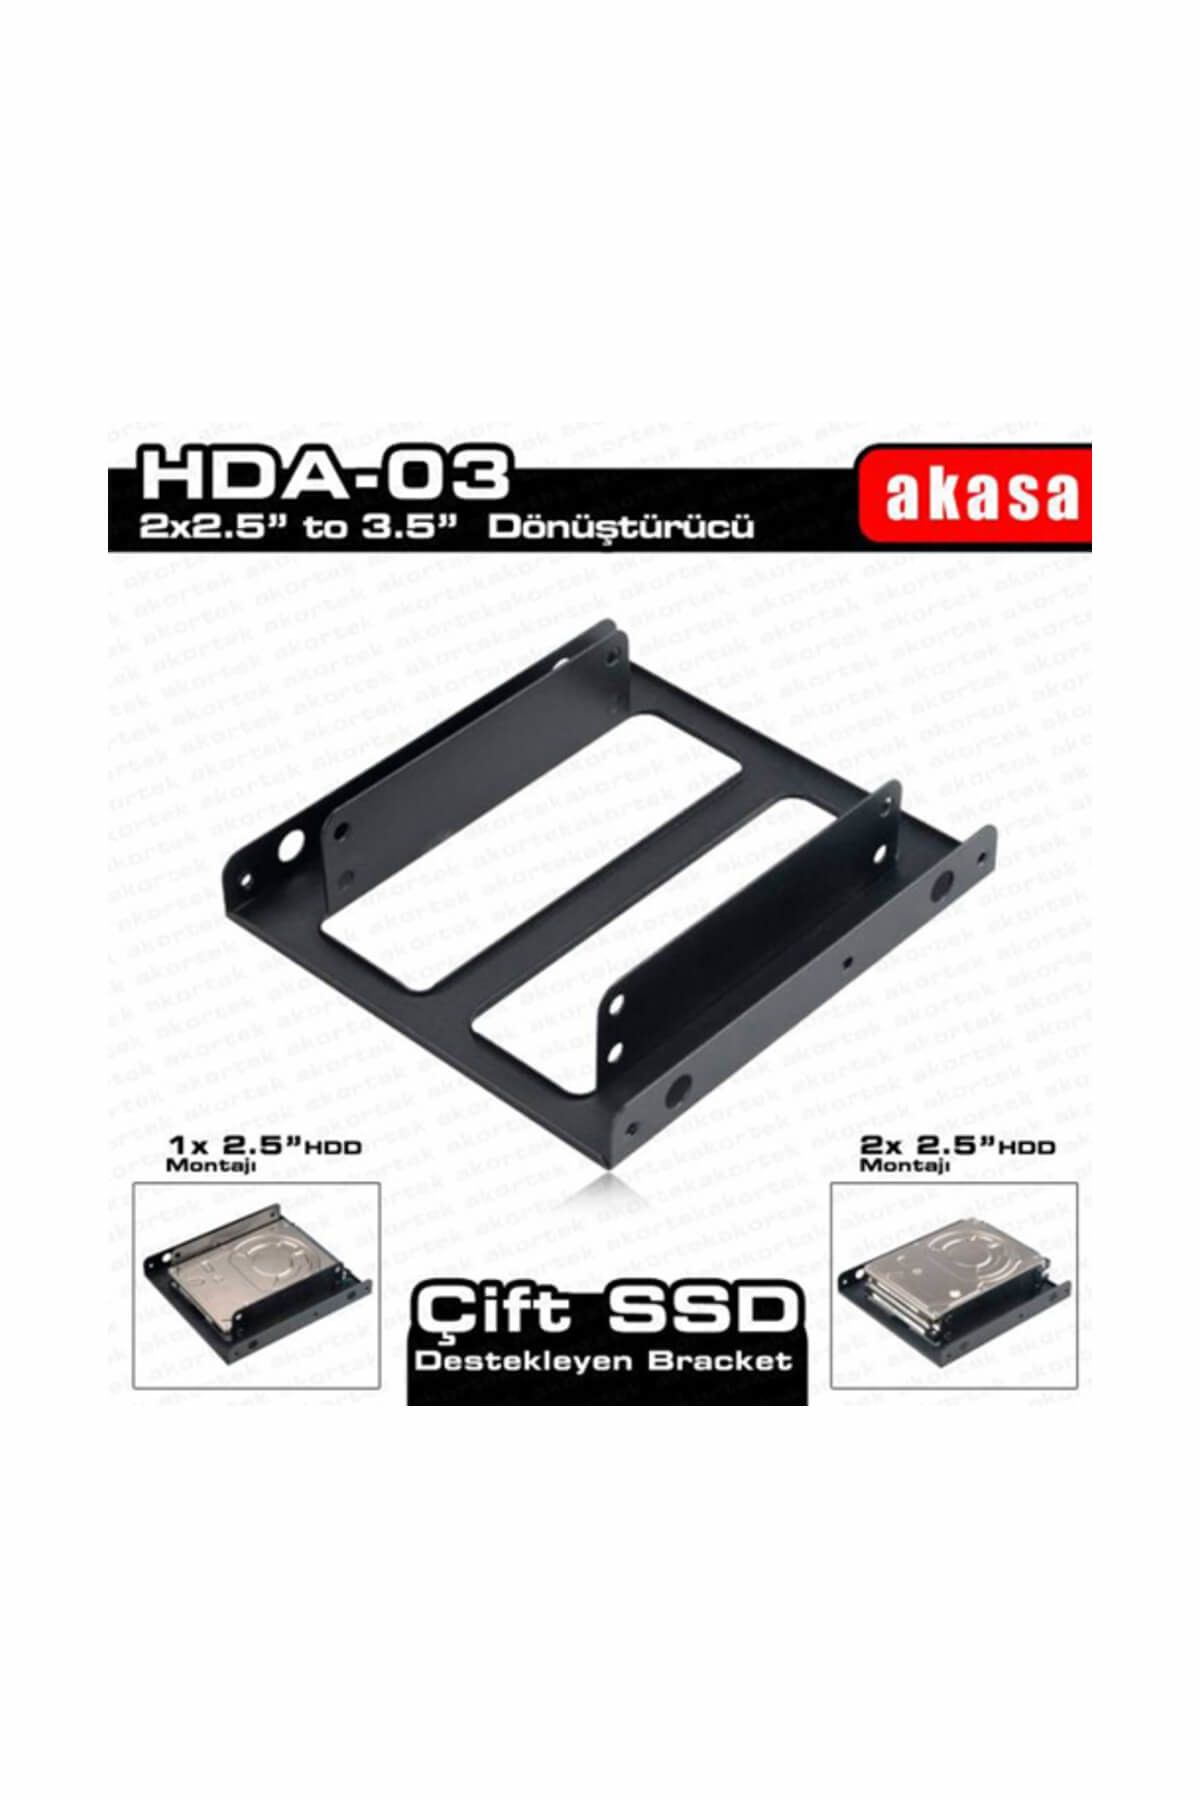 Akasa 2 x 2.5" HDD/SSD Çift Yuvalı 3.5" Dönüştürücü AK-HDA-03